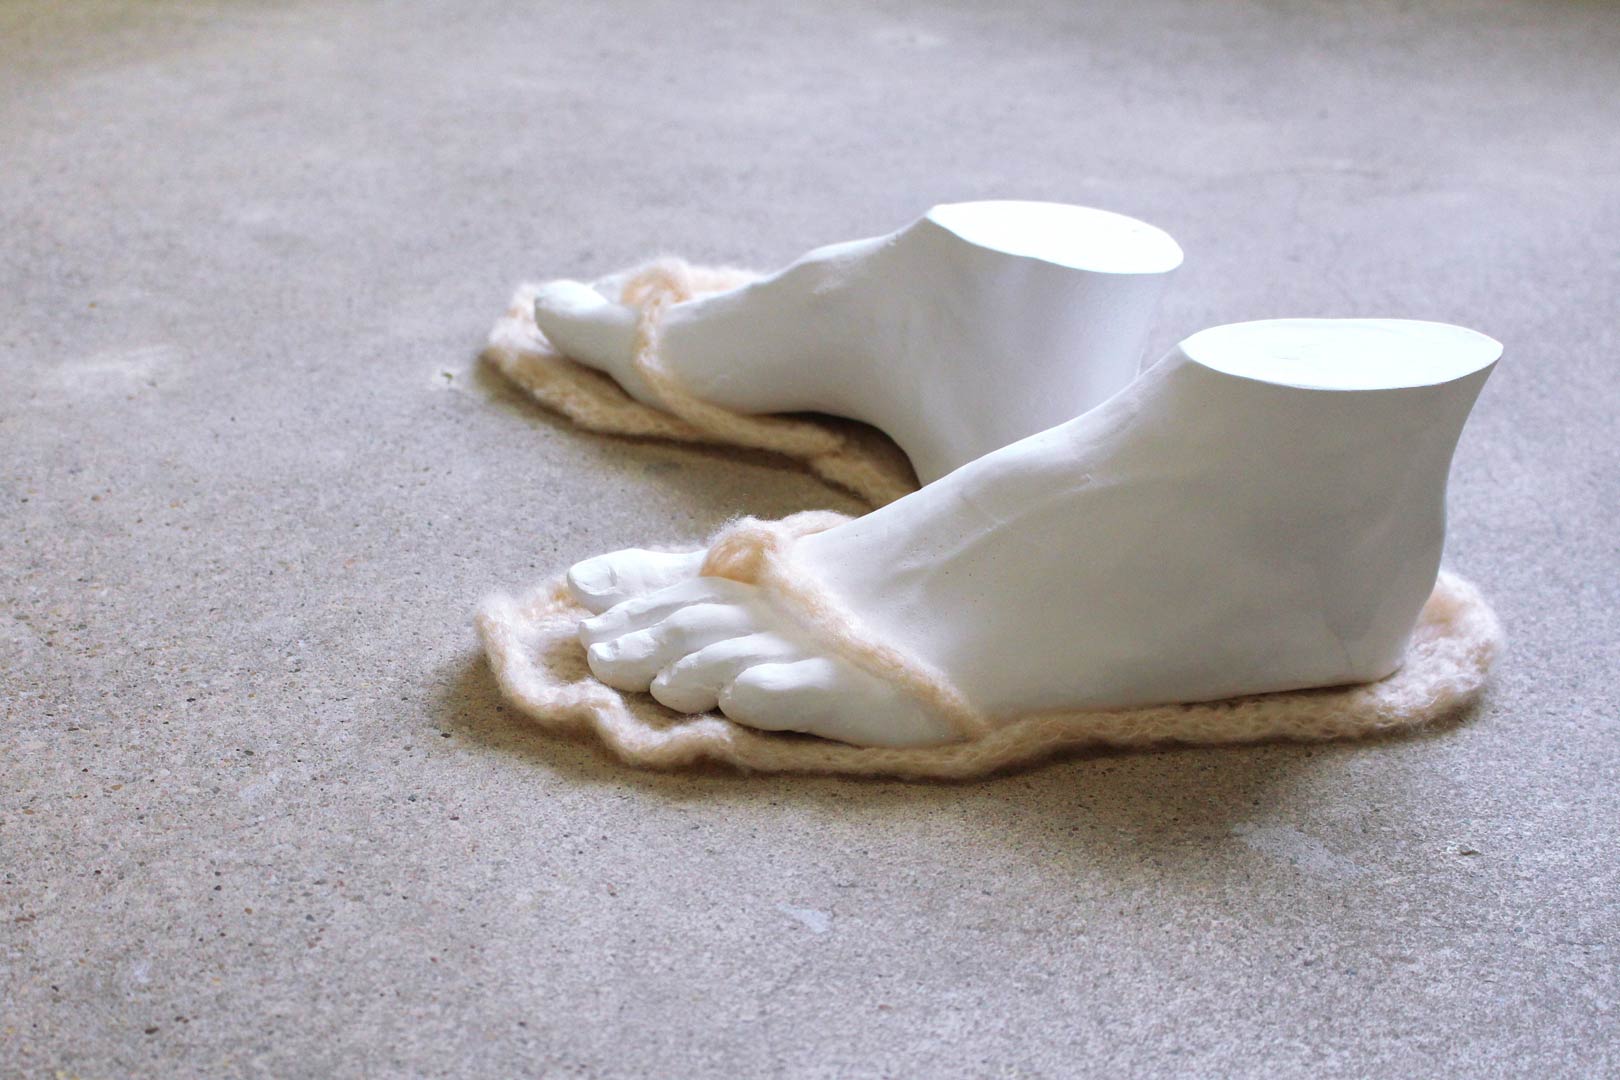 Vues de l'installation intitulée "Douces indolences". Focus resserré sur une paire de pieds sans corps chaussant des tongs en laine rose pale. Les pieds sont issus de moulages en plâtre réalisés à partir des corps des artistes.